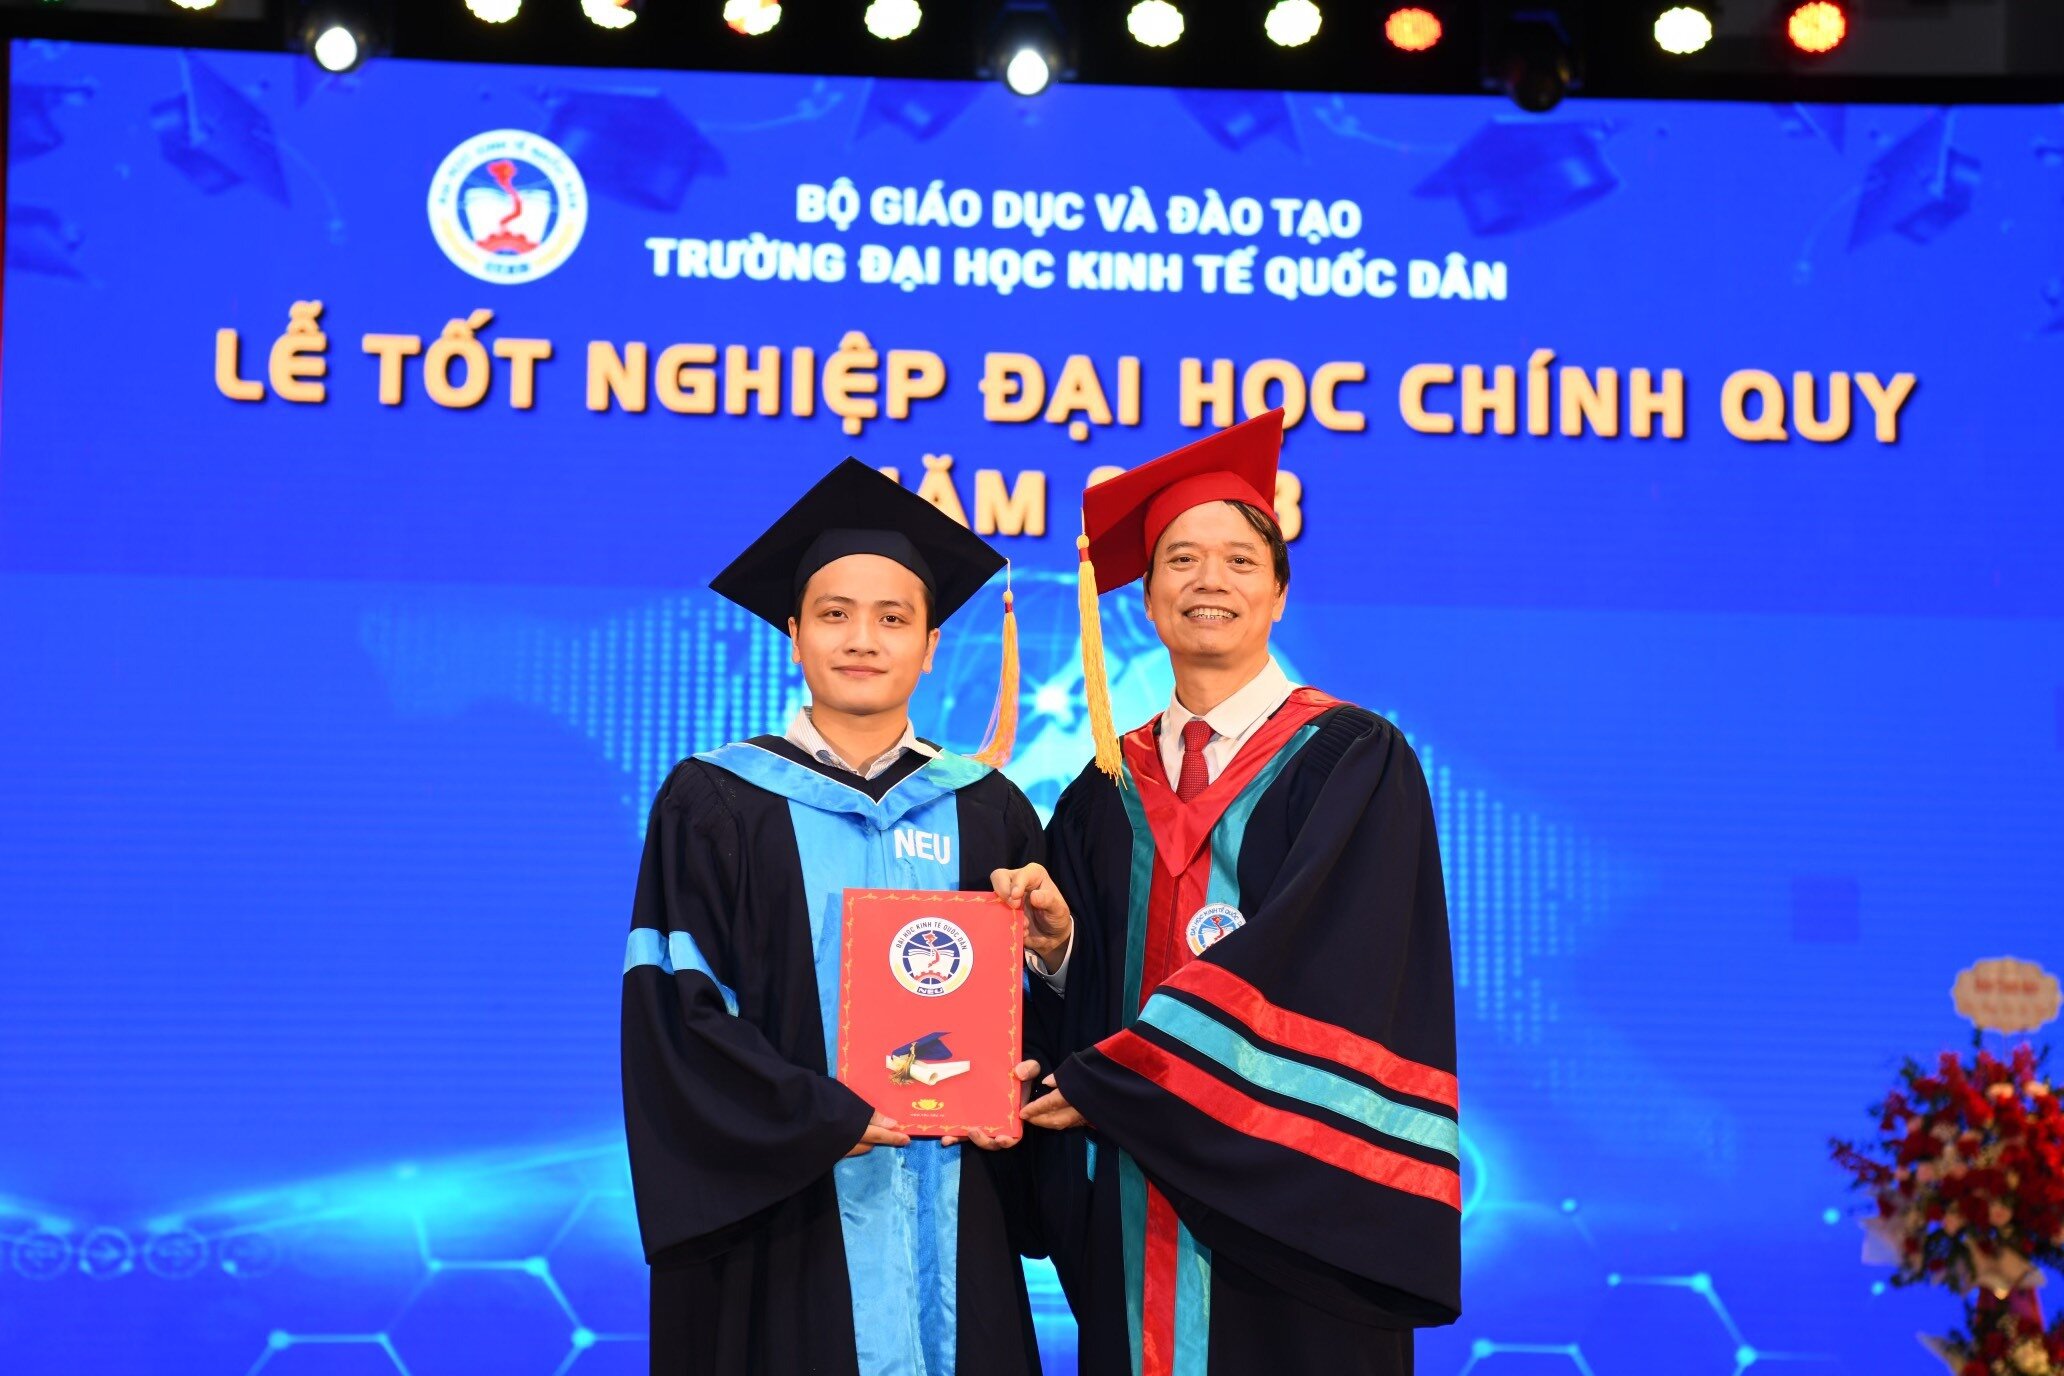 Cậu sinh viên hiếu học trong ngày nhận bằng tốt nghiệp tại trường Đại học Kinh tế Quốc dân.